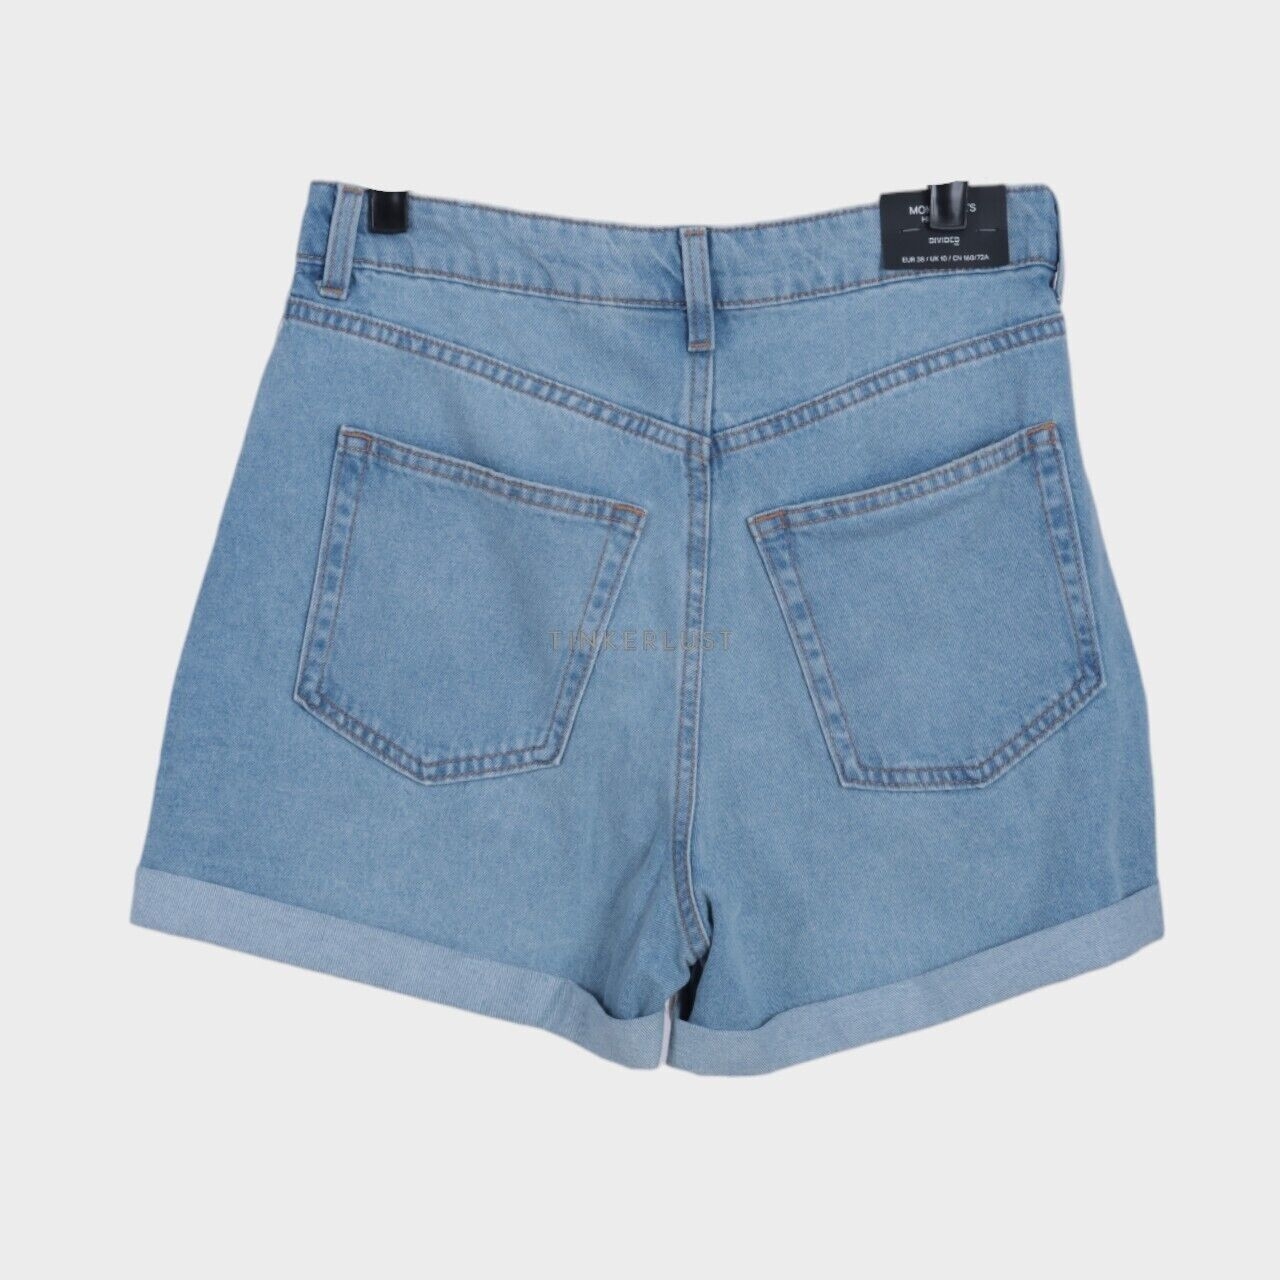 H&M Light Blue Short Pants